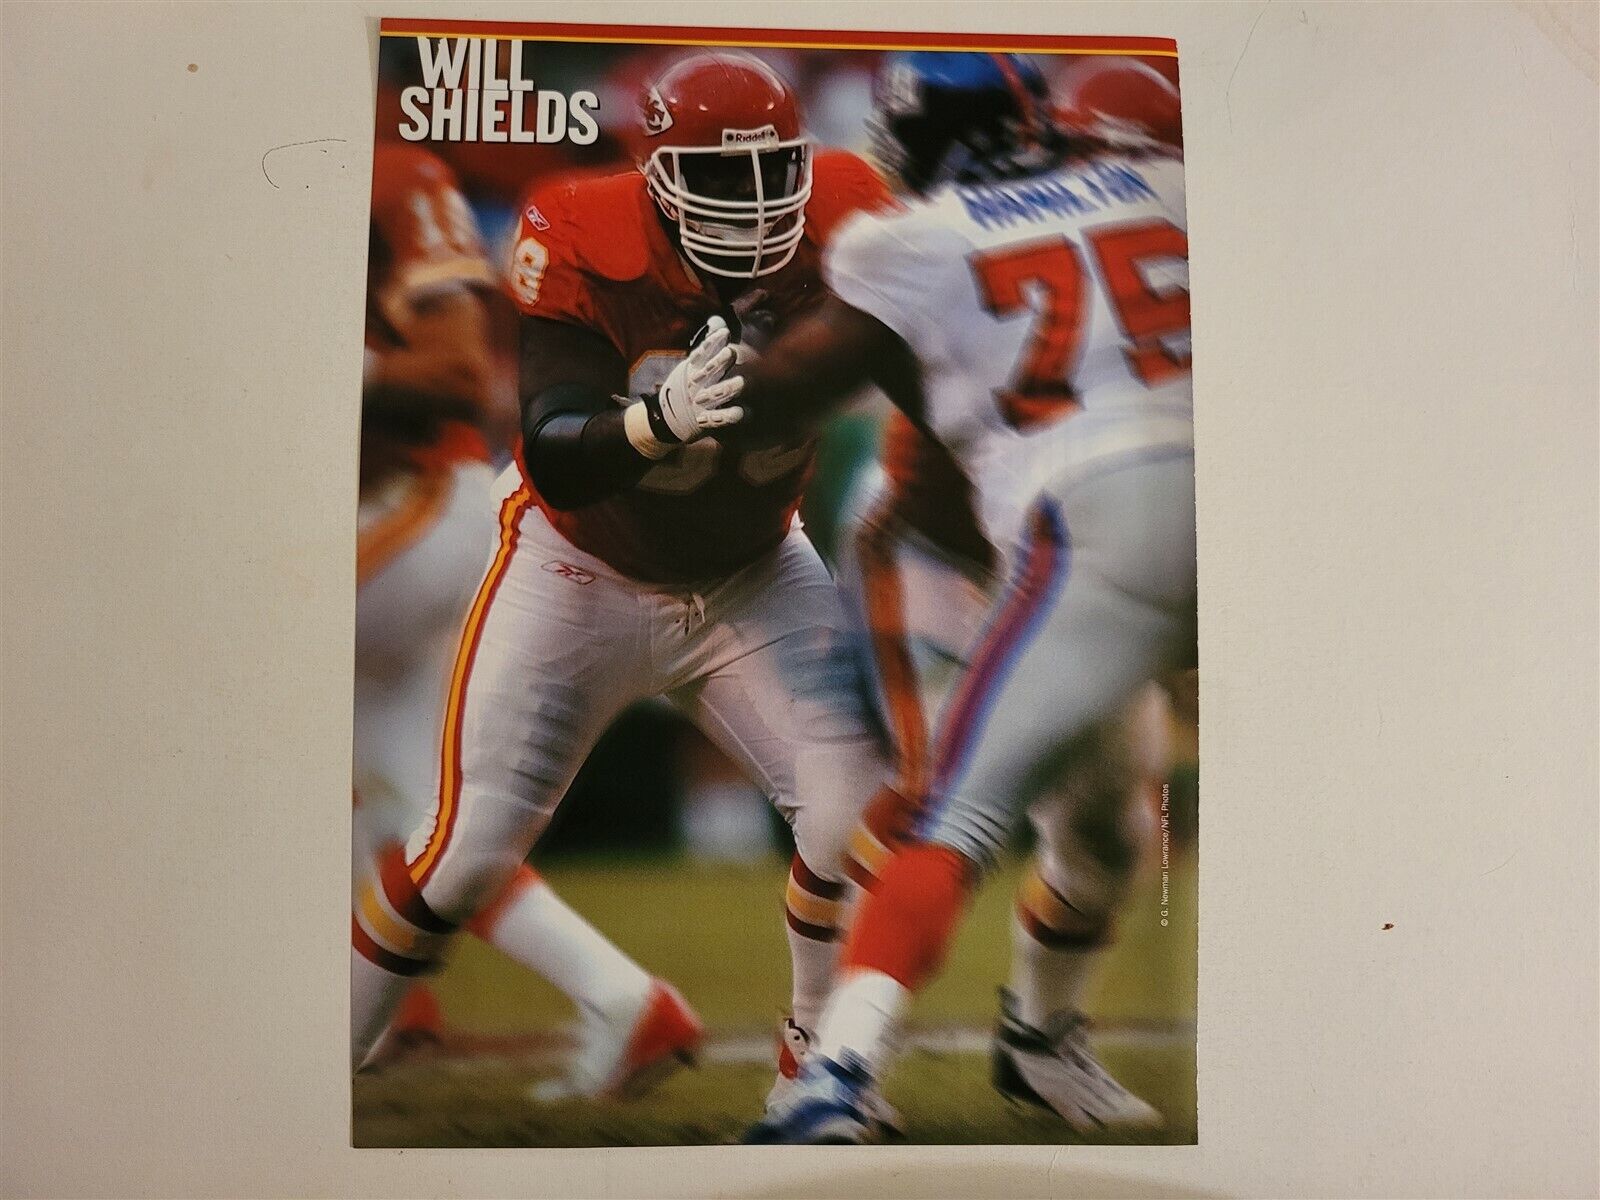 Will Shields 2004 Football Megastars Poster Sheet